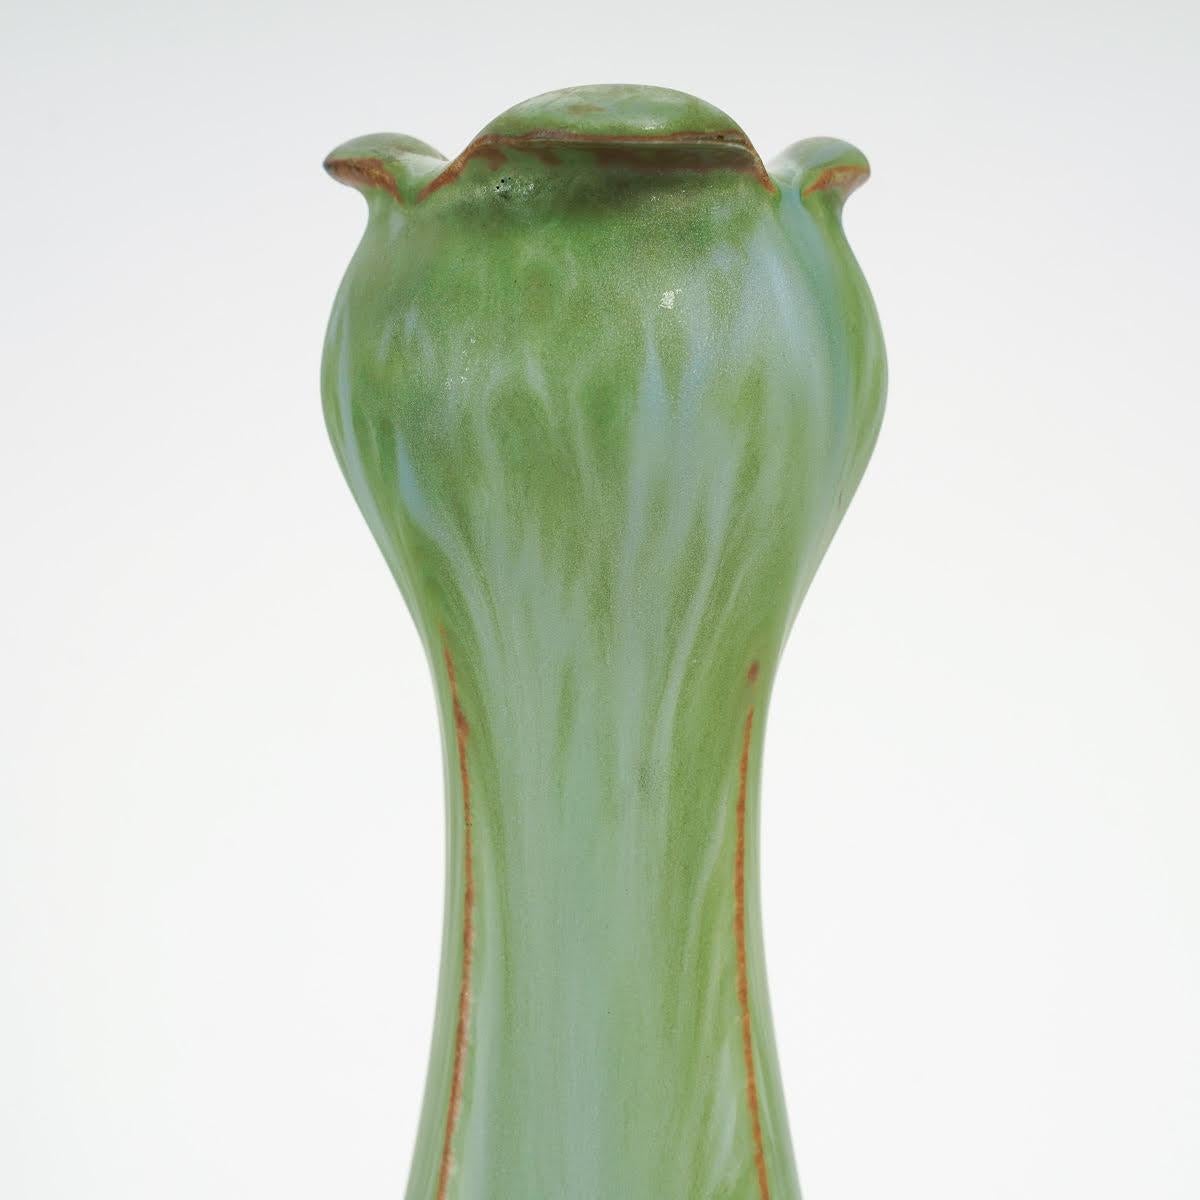 Vase Art nouveau en grès et bronze doré de Paul Louchet .

Vase en grès et bronze doré du début du 20e siècle par Paul Louchet.

Dimensions : h : 36cm, p : 13.5cm